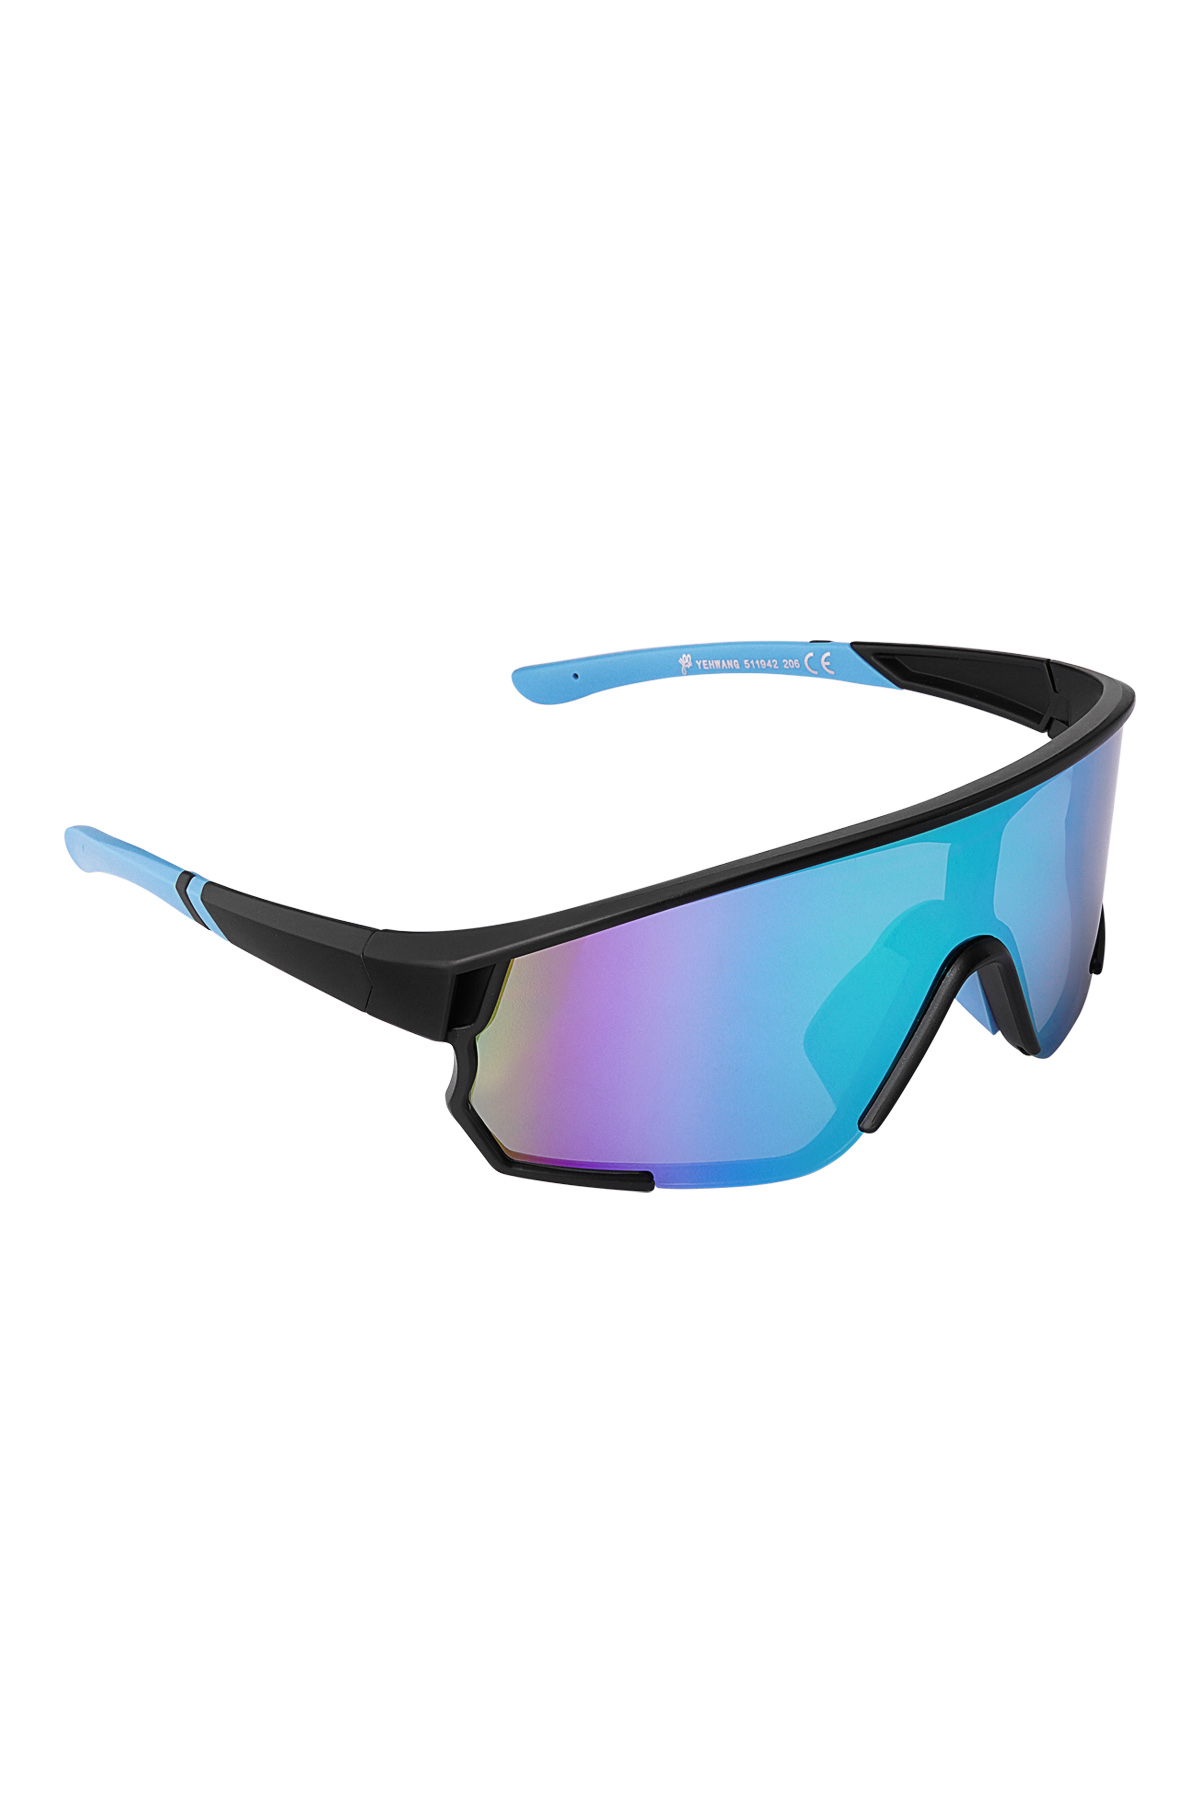 Güneş gözlüğü renkli lensler - siyah/mavi h5 